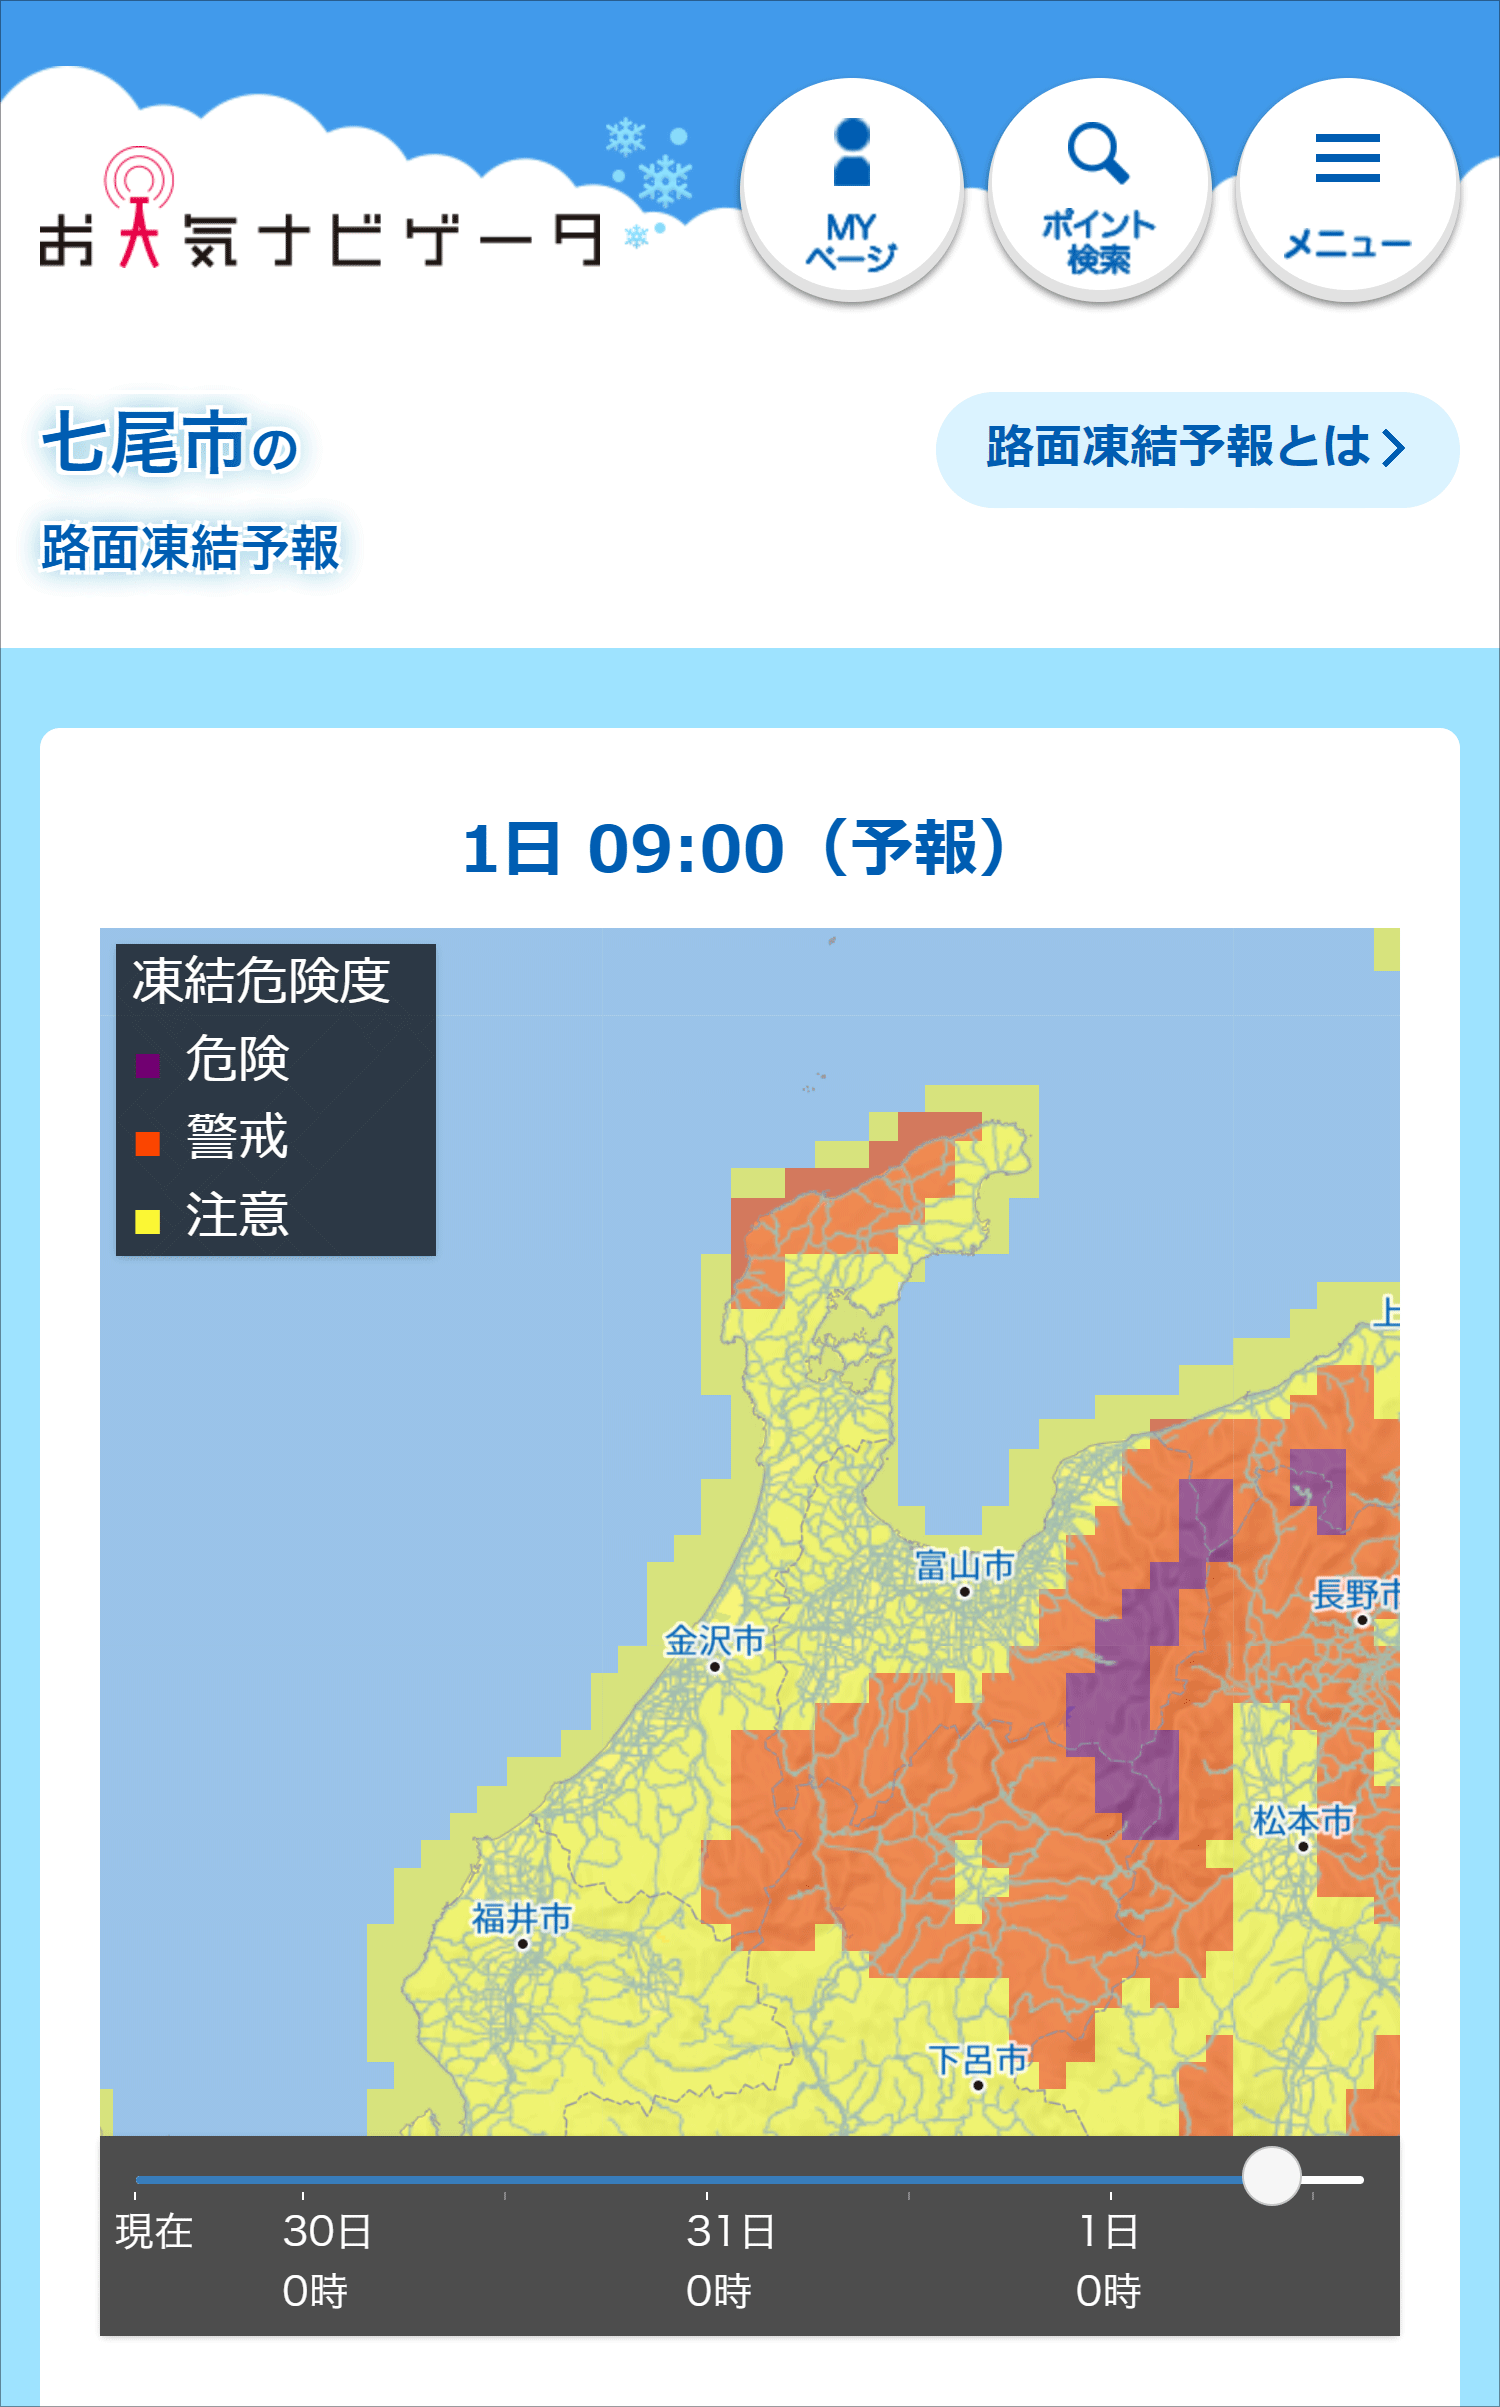 お天気ナビゲータ「石川県の路面凍結予報」